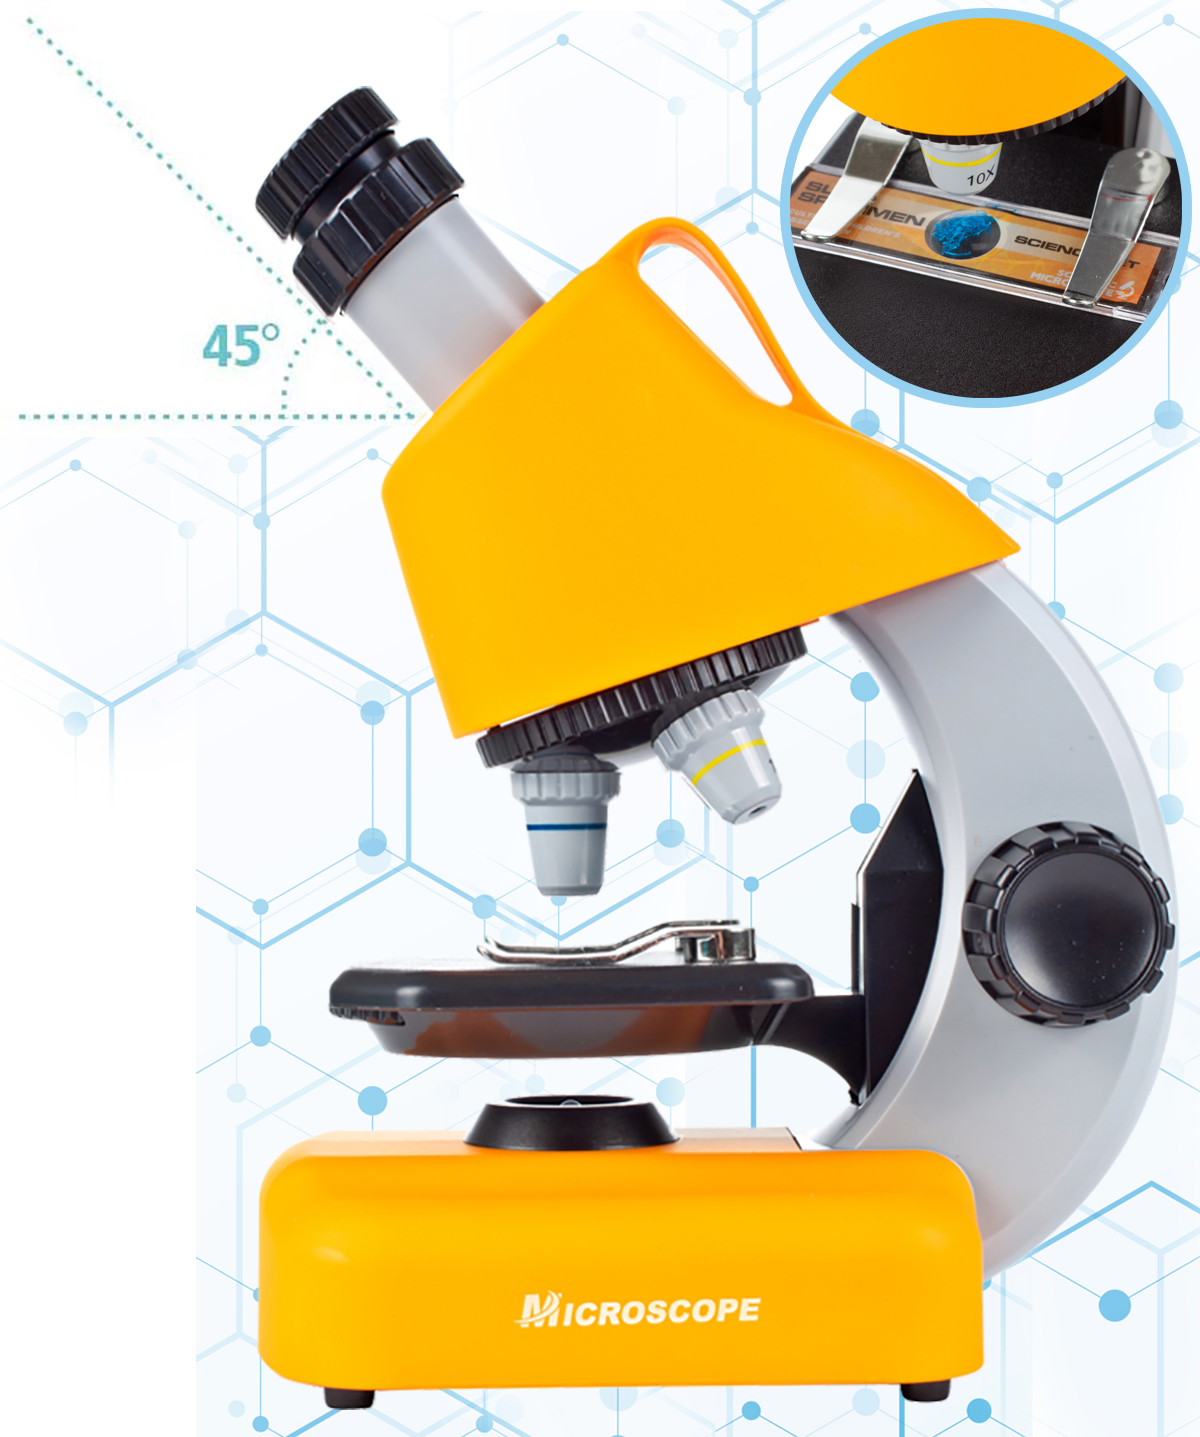 Microscop Multifunctional Stiintific pentru copii idealSTORE, Dimensiuni 16 x 10 x 22,5 cm Include 3 lentile de marire, Numeroase Accesorii, Lampa LED pentru Iluminat, Inaltime Reglabila, Valiza pentru transport